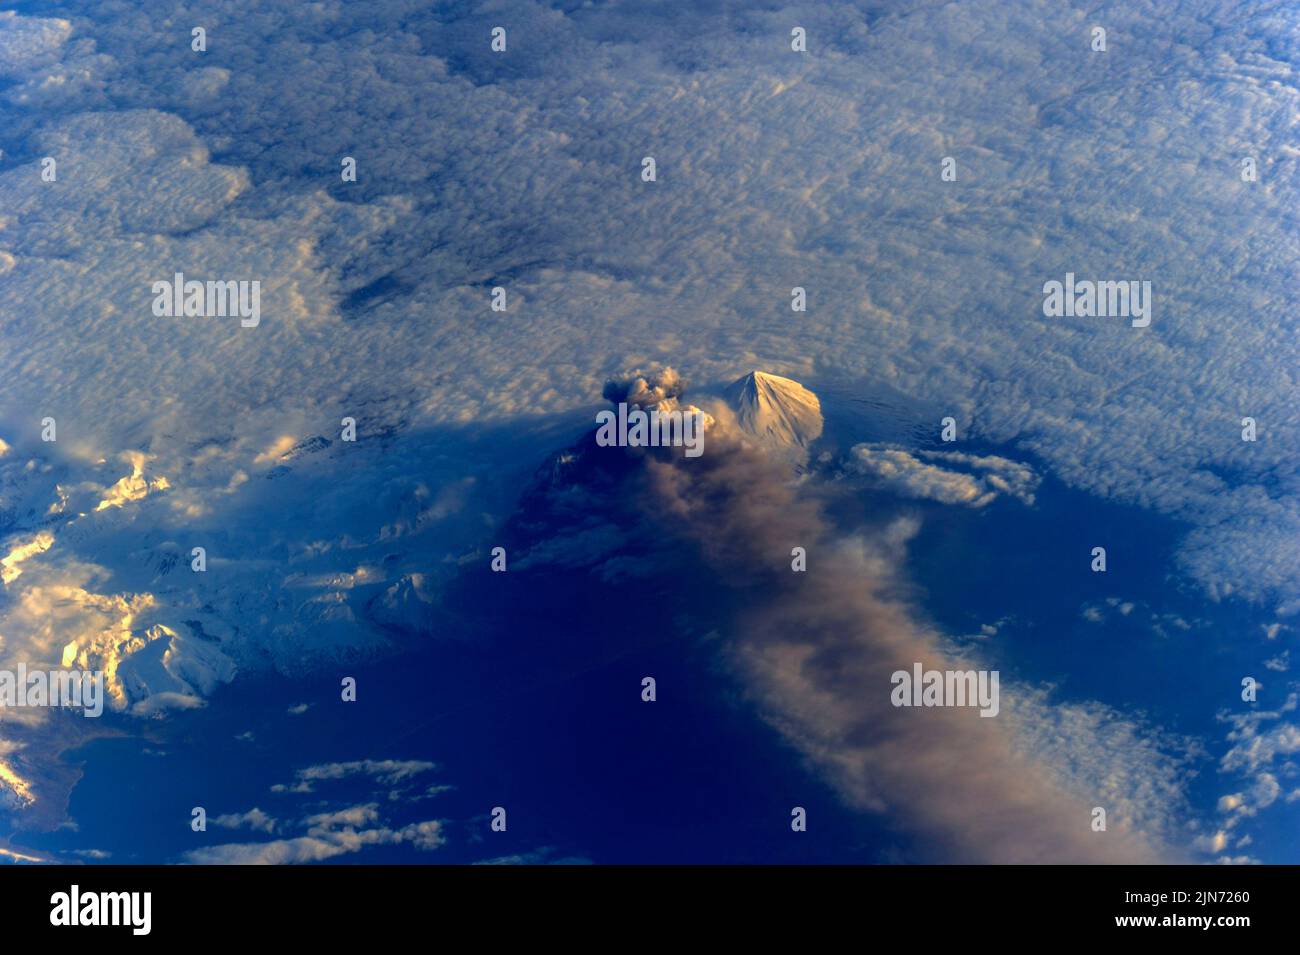 ALASKA, USA - 18 maggio 2013 - questa immagine del vulcano Pavlof è stata catturata nel quarto giorno della sua eruzione da uno degli astronauti dell'Internatio Foto Stock